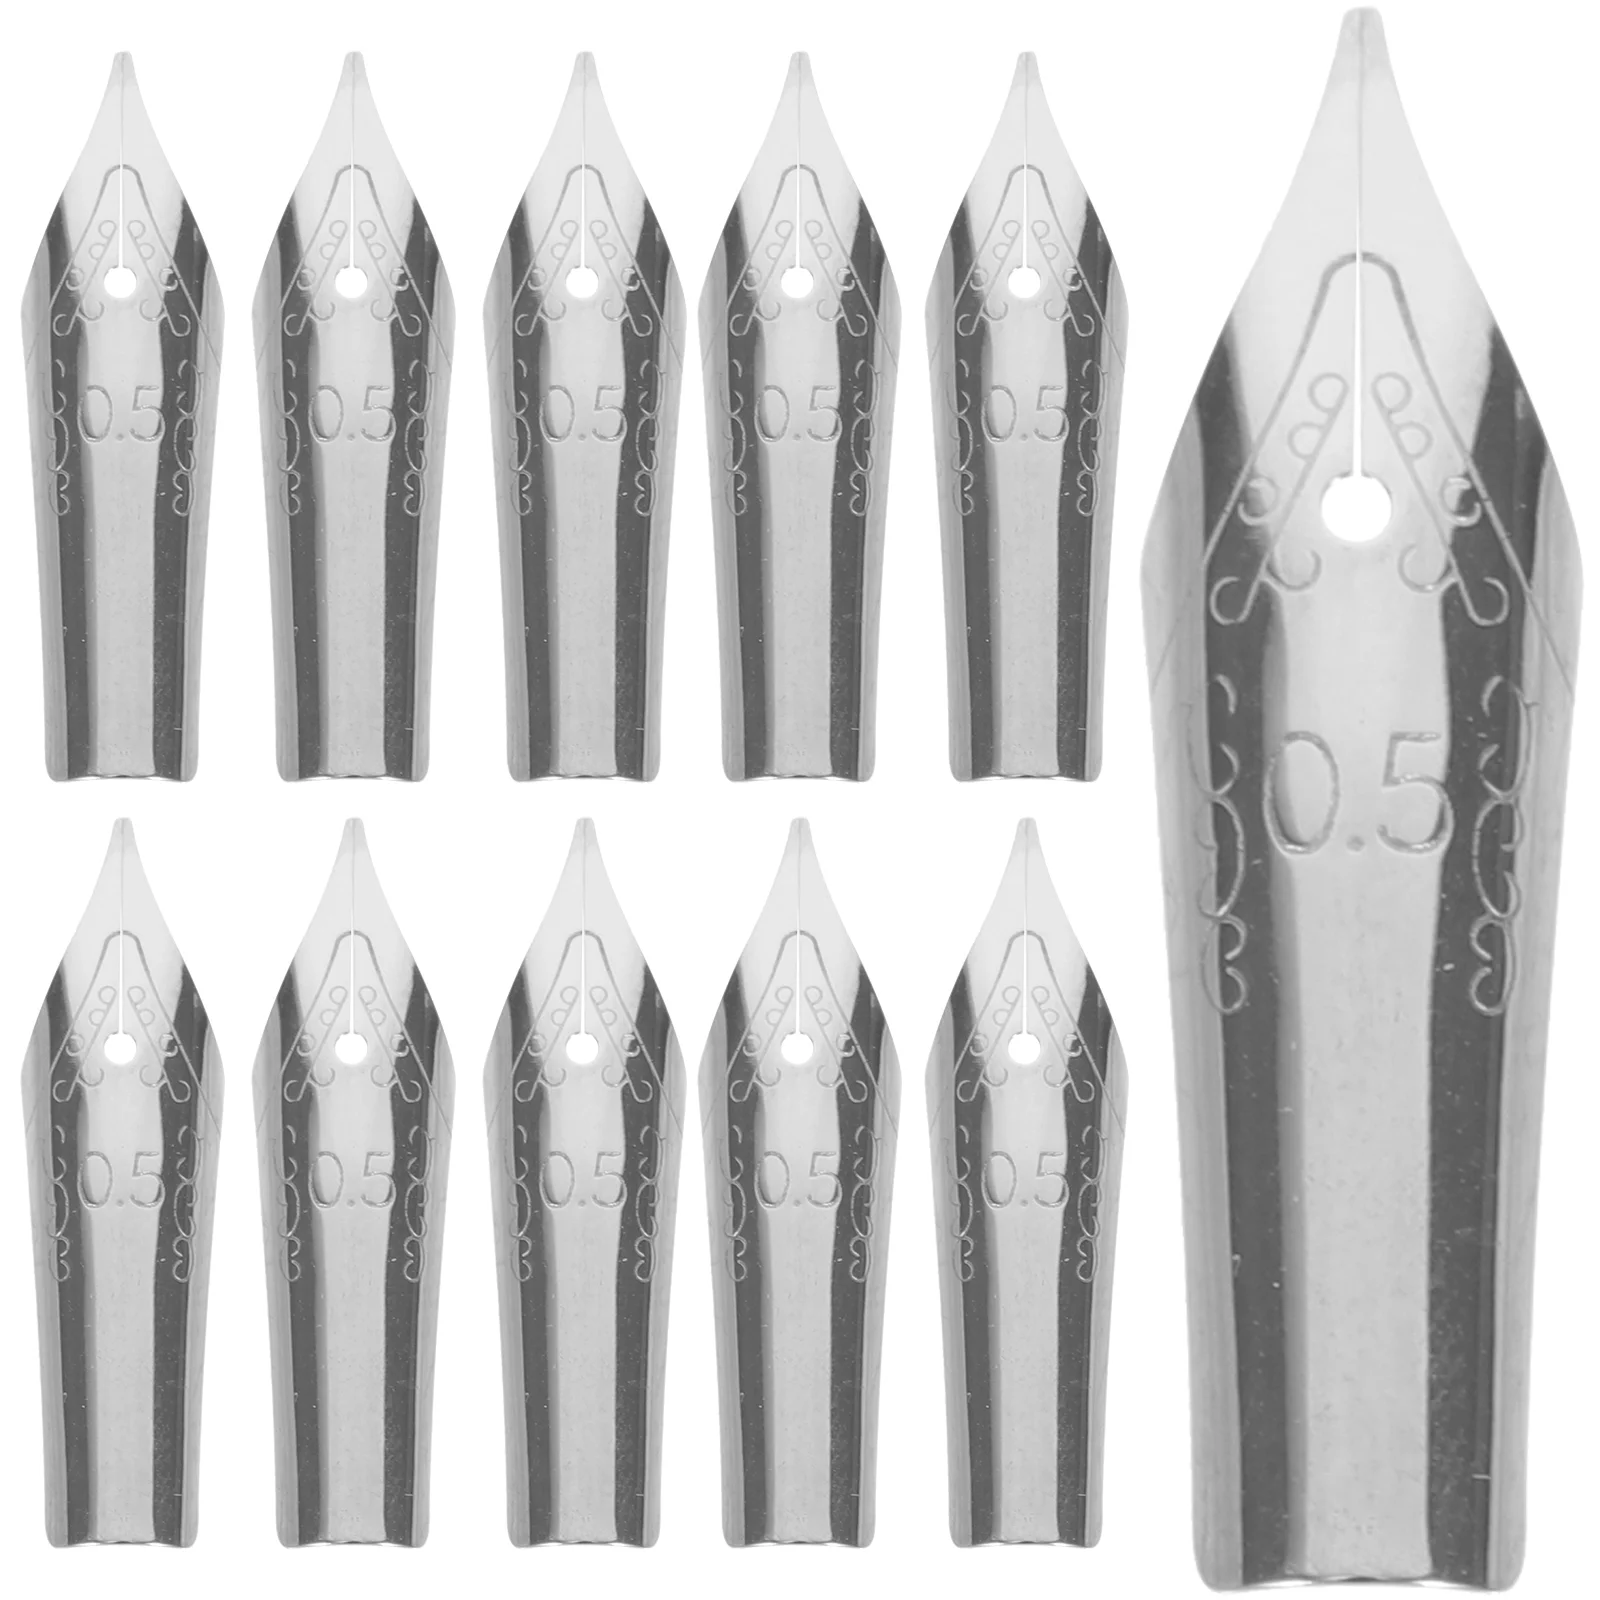 

30pcs Calligraphy Pen Nibs Fountain Pen Tips Replacement Metal Pen Nibs Replacement Nibs Pen Tips